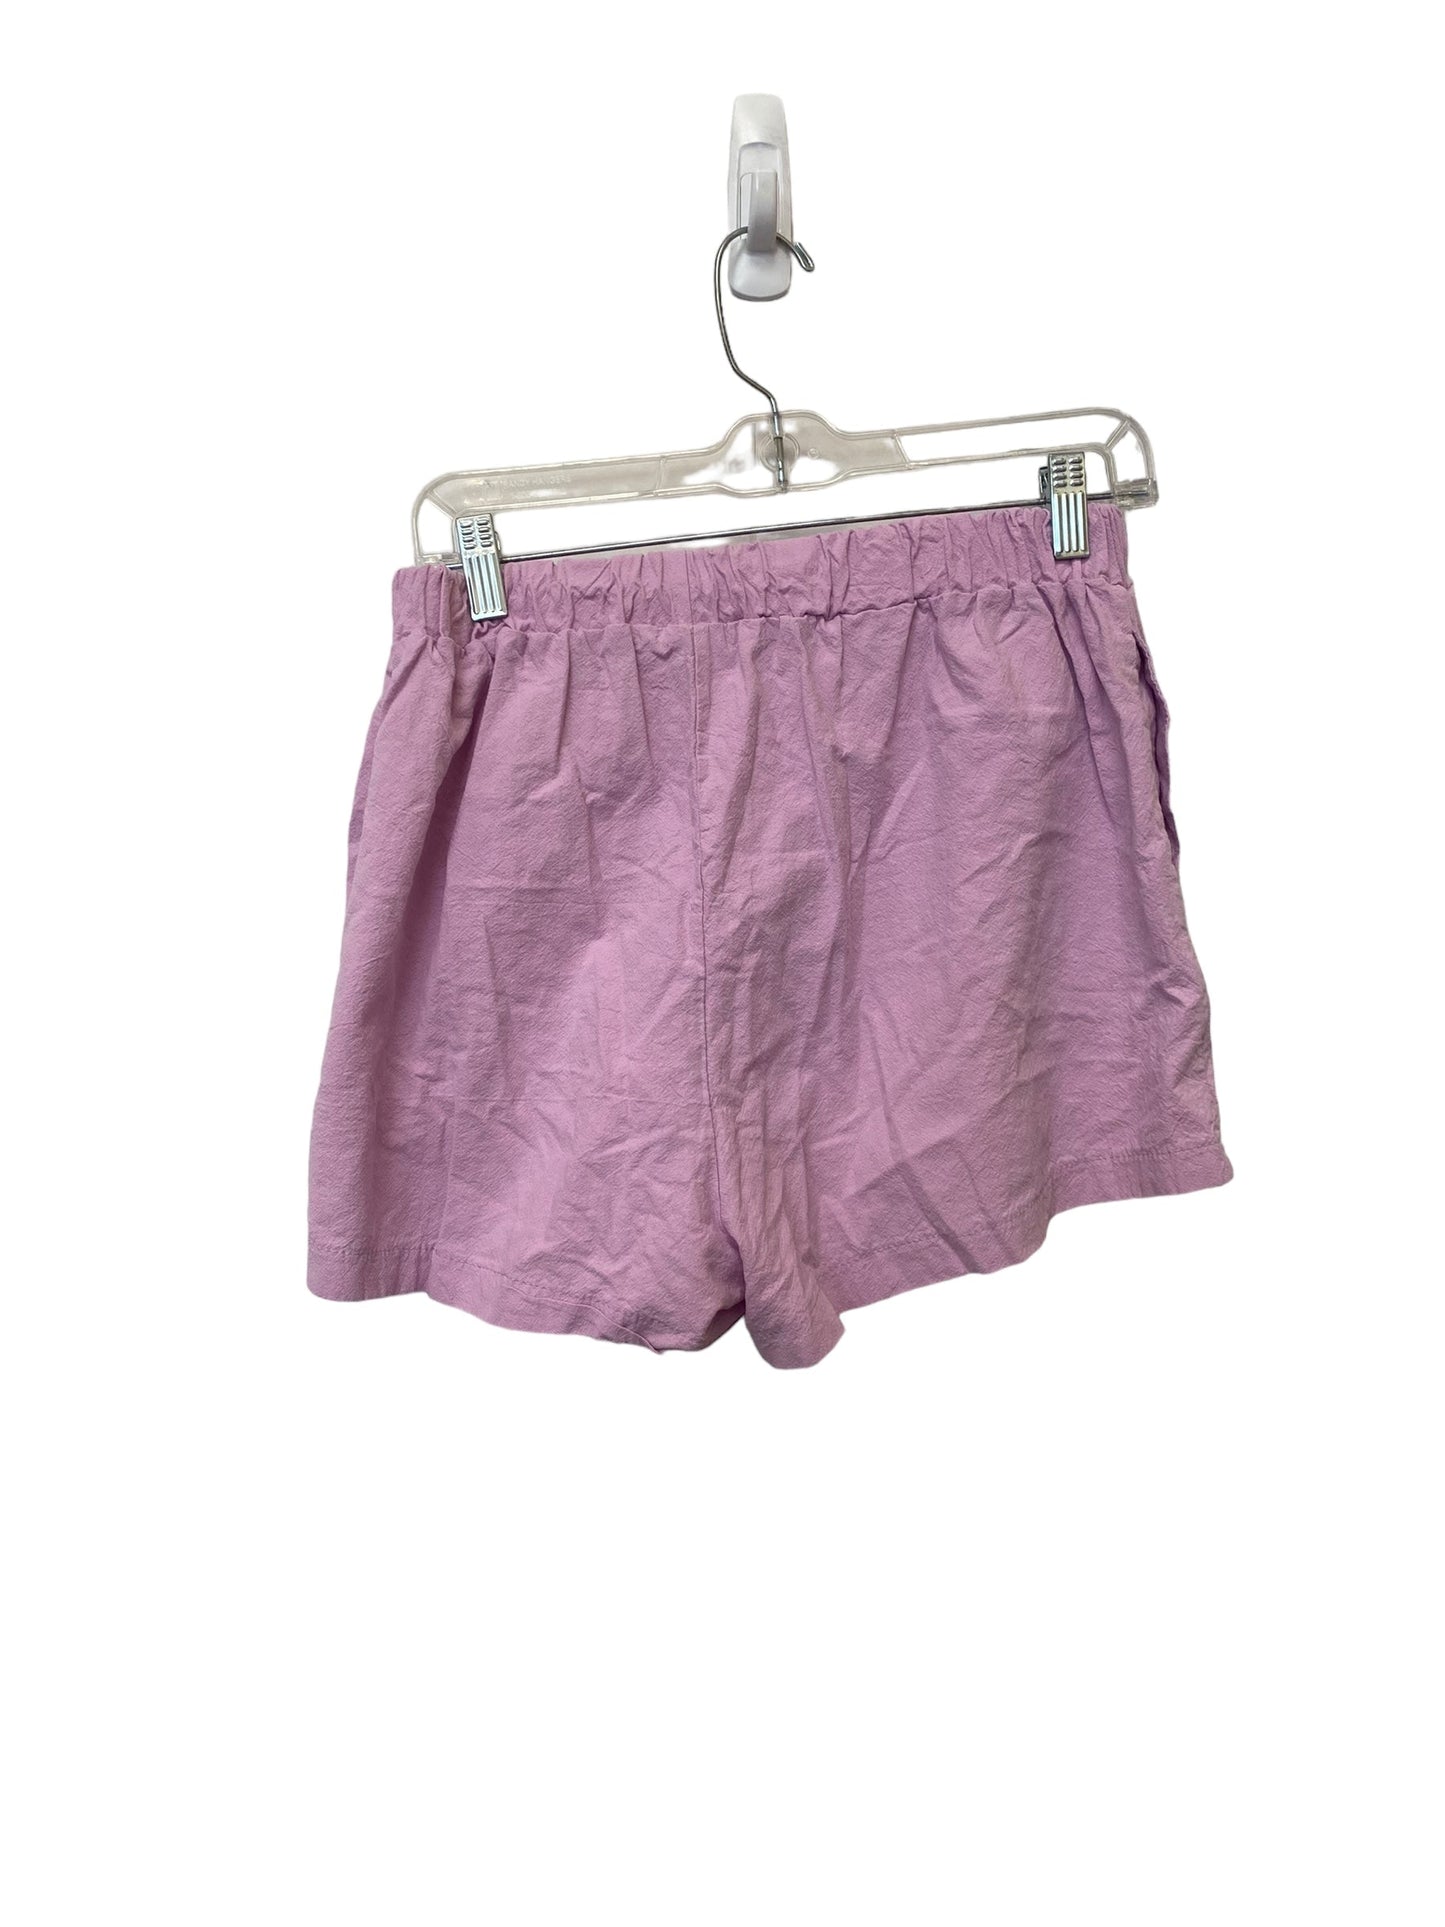 Purple Shorts Set Clothes Mentor, Size L